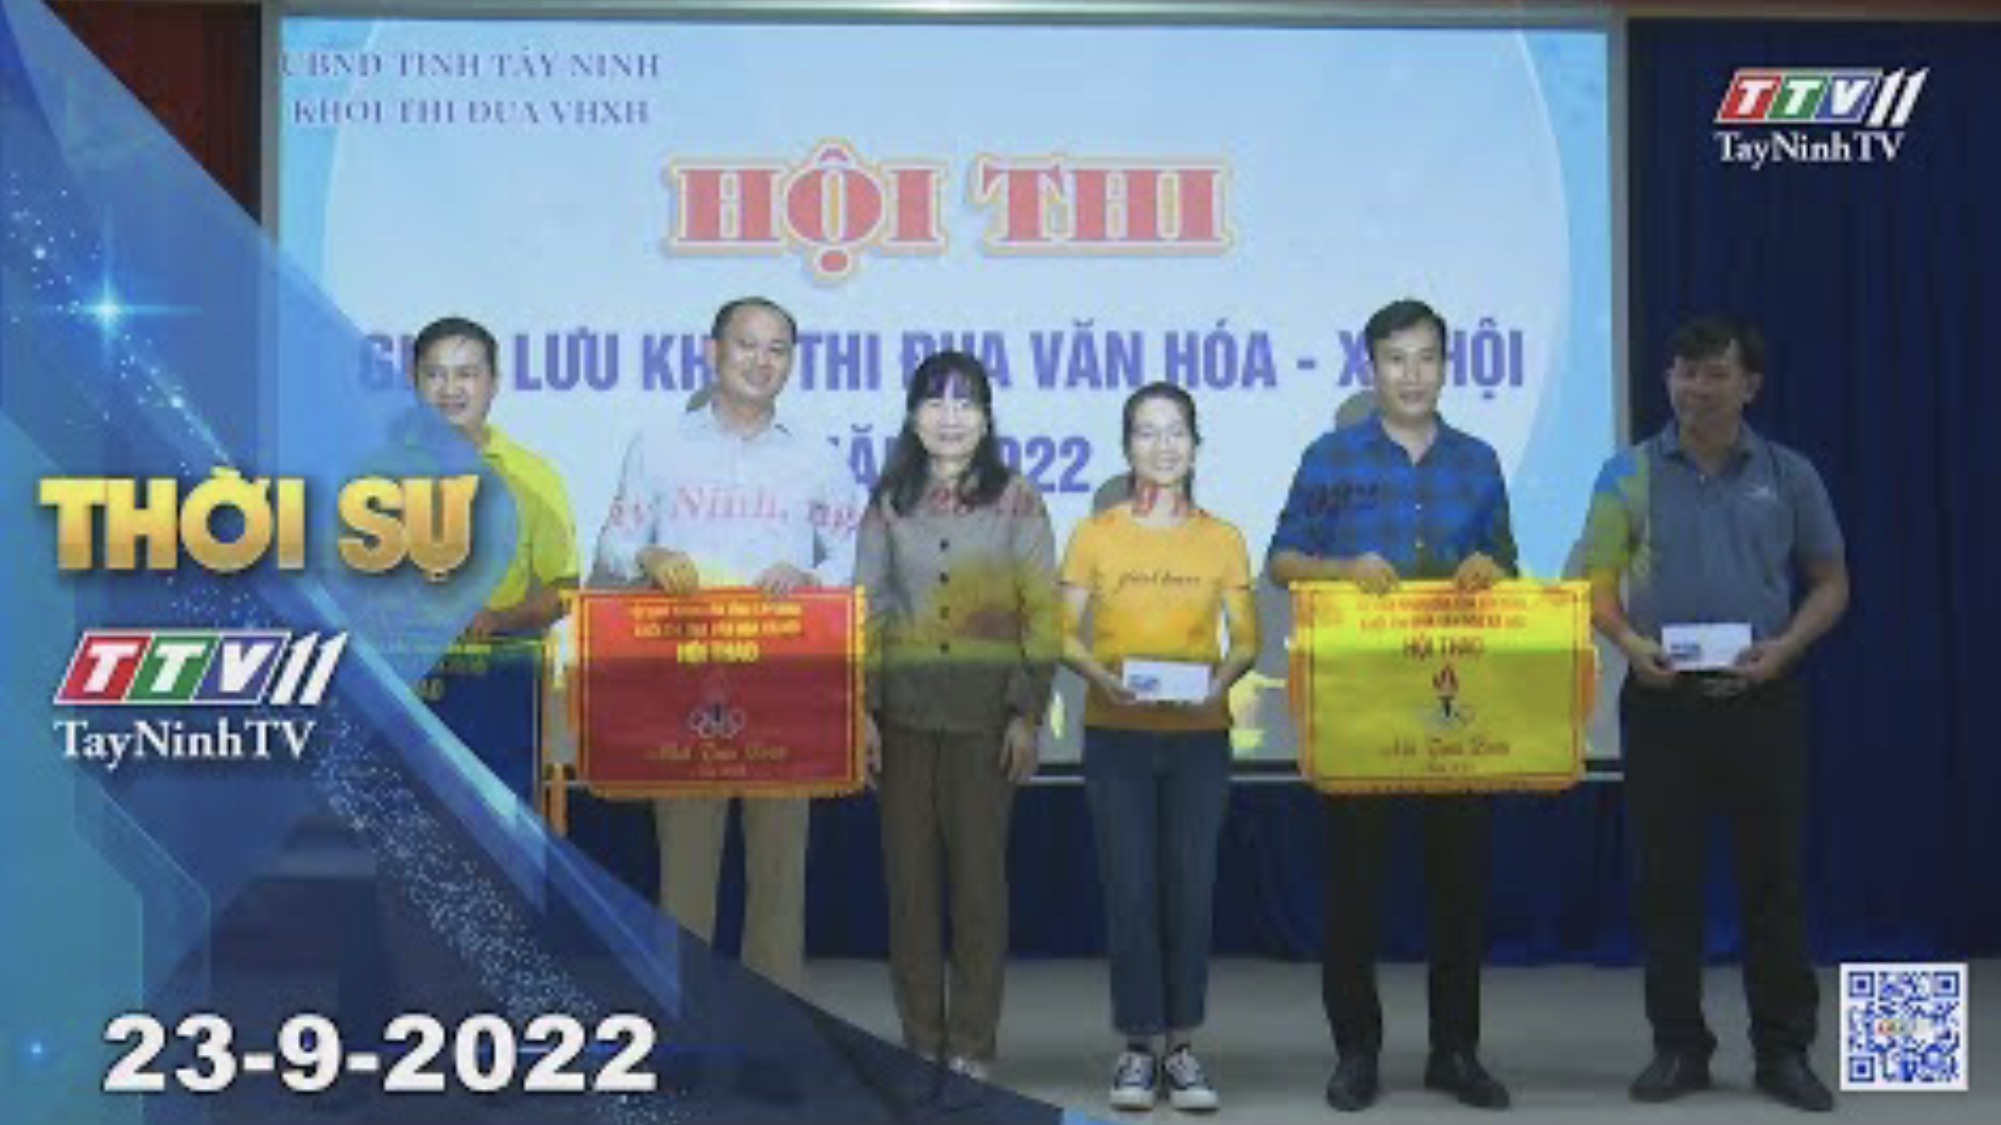 Thời sự Tây Ninh 23-9-2022 | Tin tức hôm nay | TayNinhTV